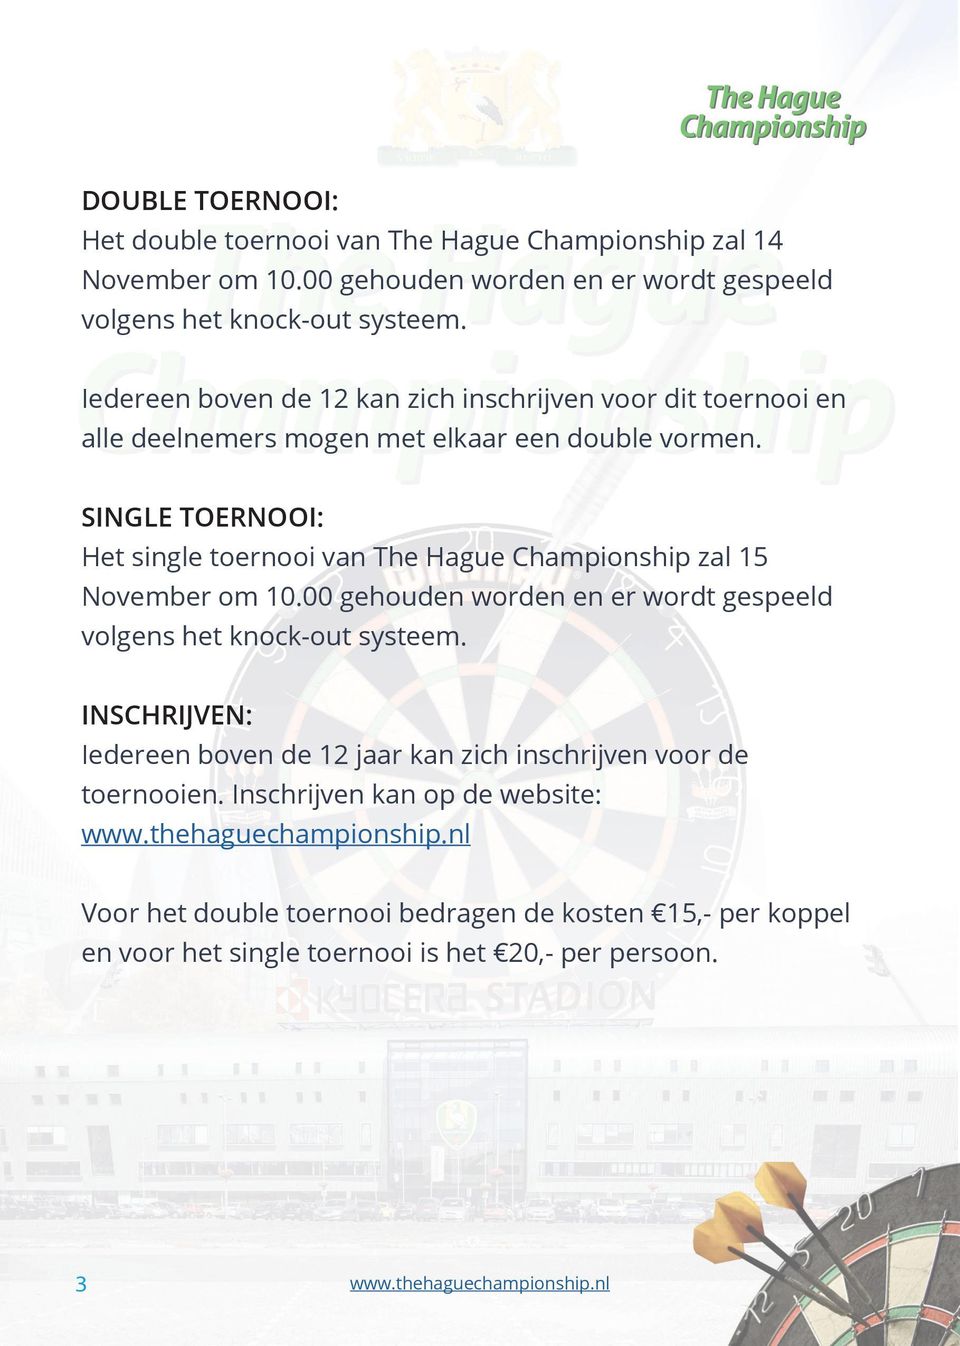 SINGLE TOERNOOI: Het single toernooi van The Hague Championship zal 15 November om 10.00 gehouden worden en er wordt gespeeld volgens het knock-out systeem.